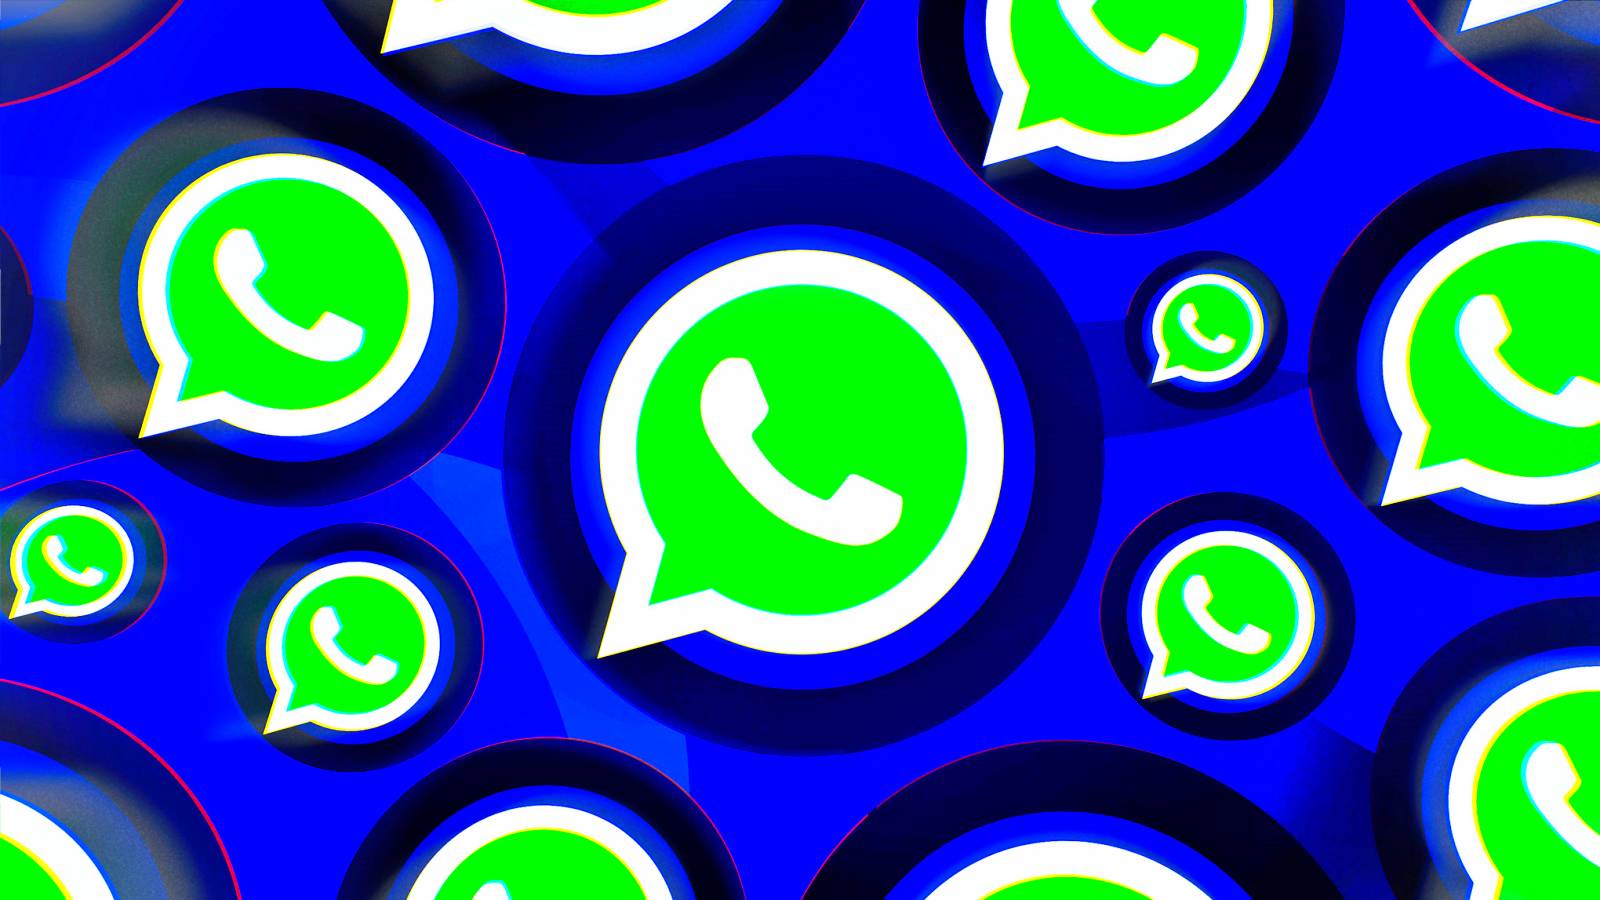 WhatsApp Record heeft officieel miljarden mensen aangekondigd